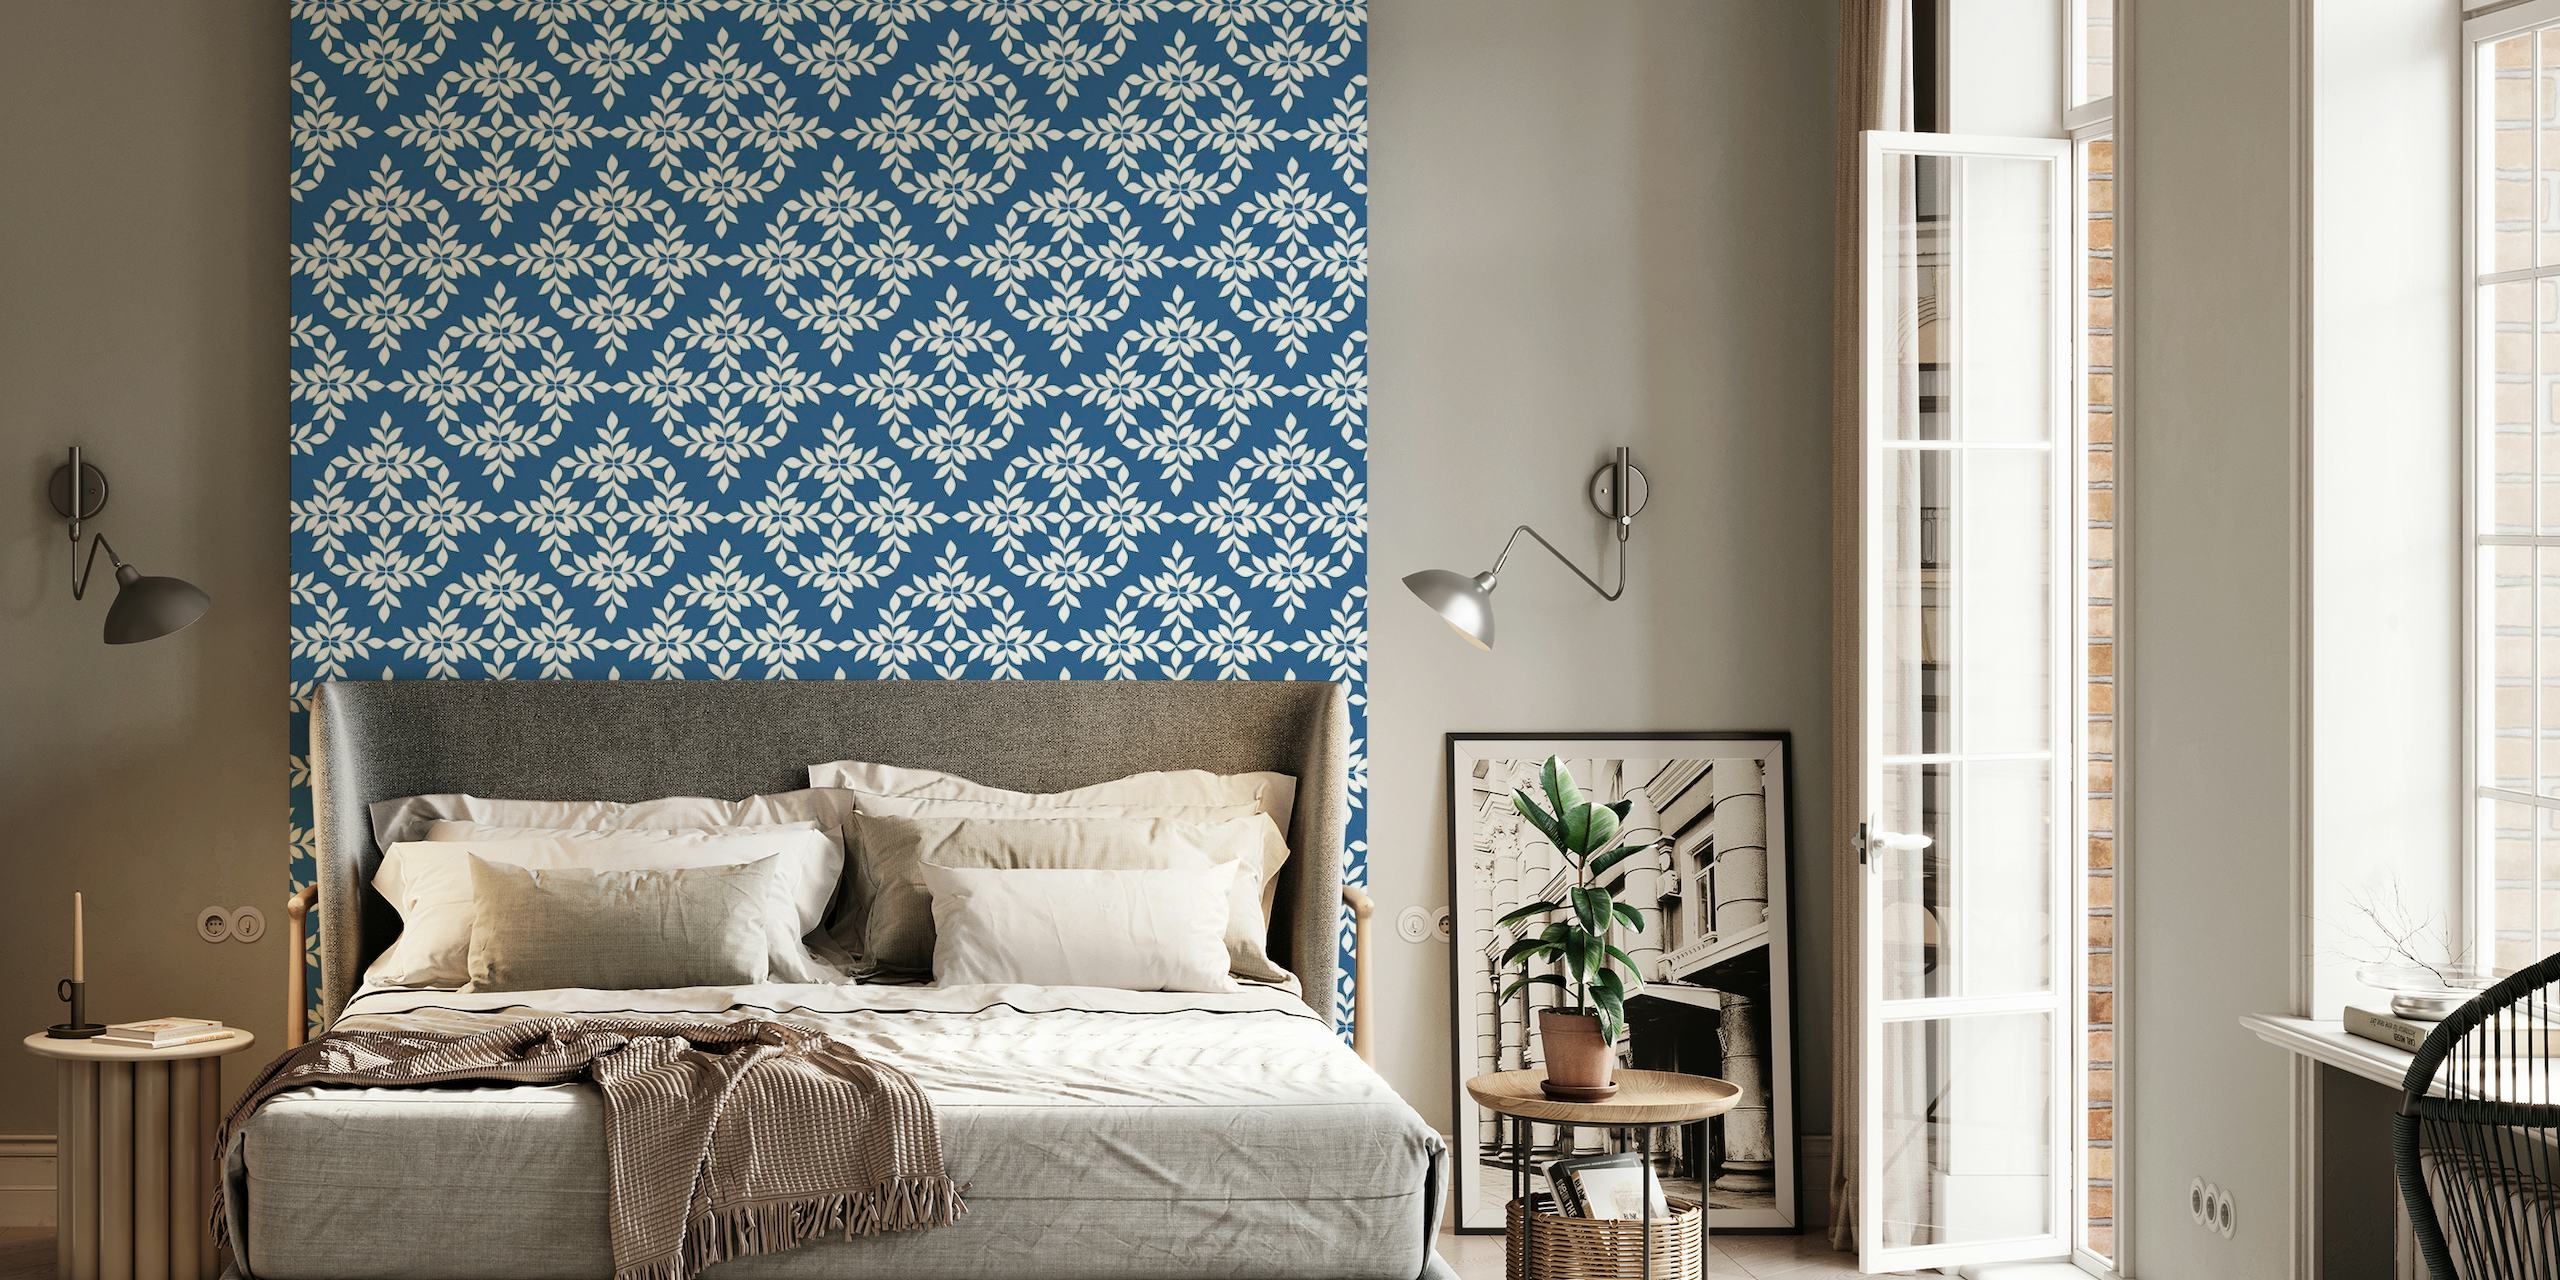 Fotomural vinílico de parede com padrão azul índigo e branco com desenhos complexos